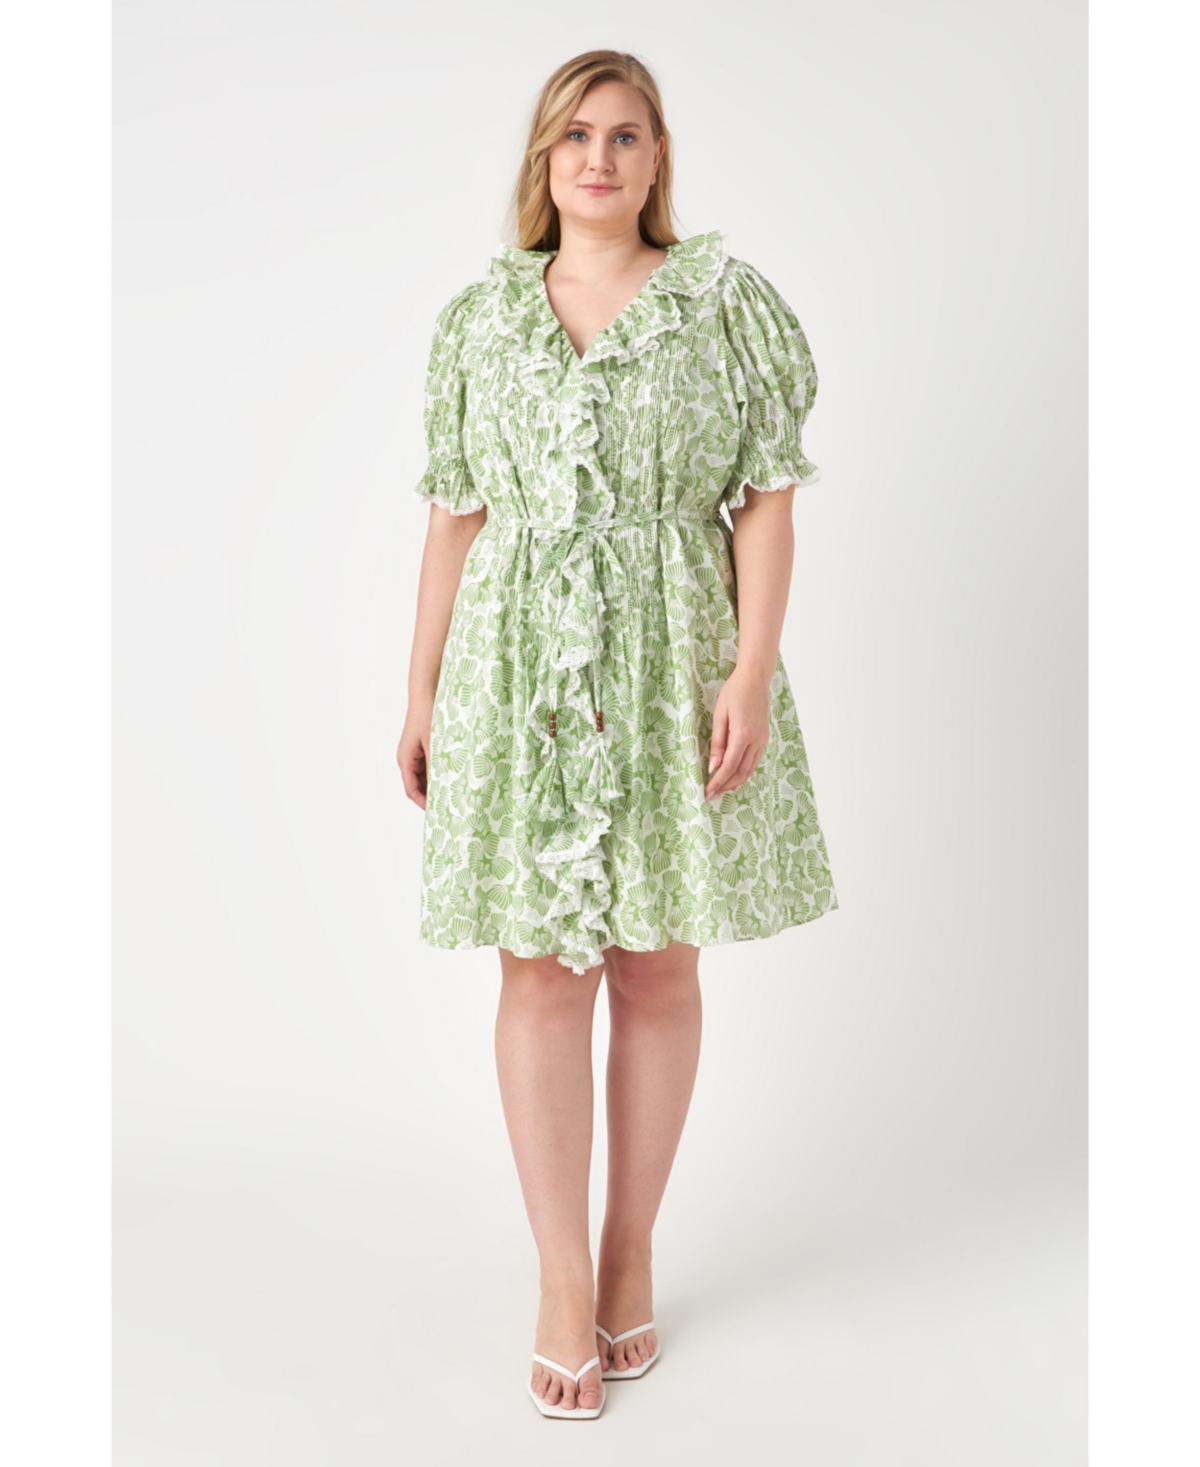 Women's Plus size Ruffle Pin tuck Dress - White/green